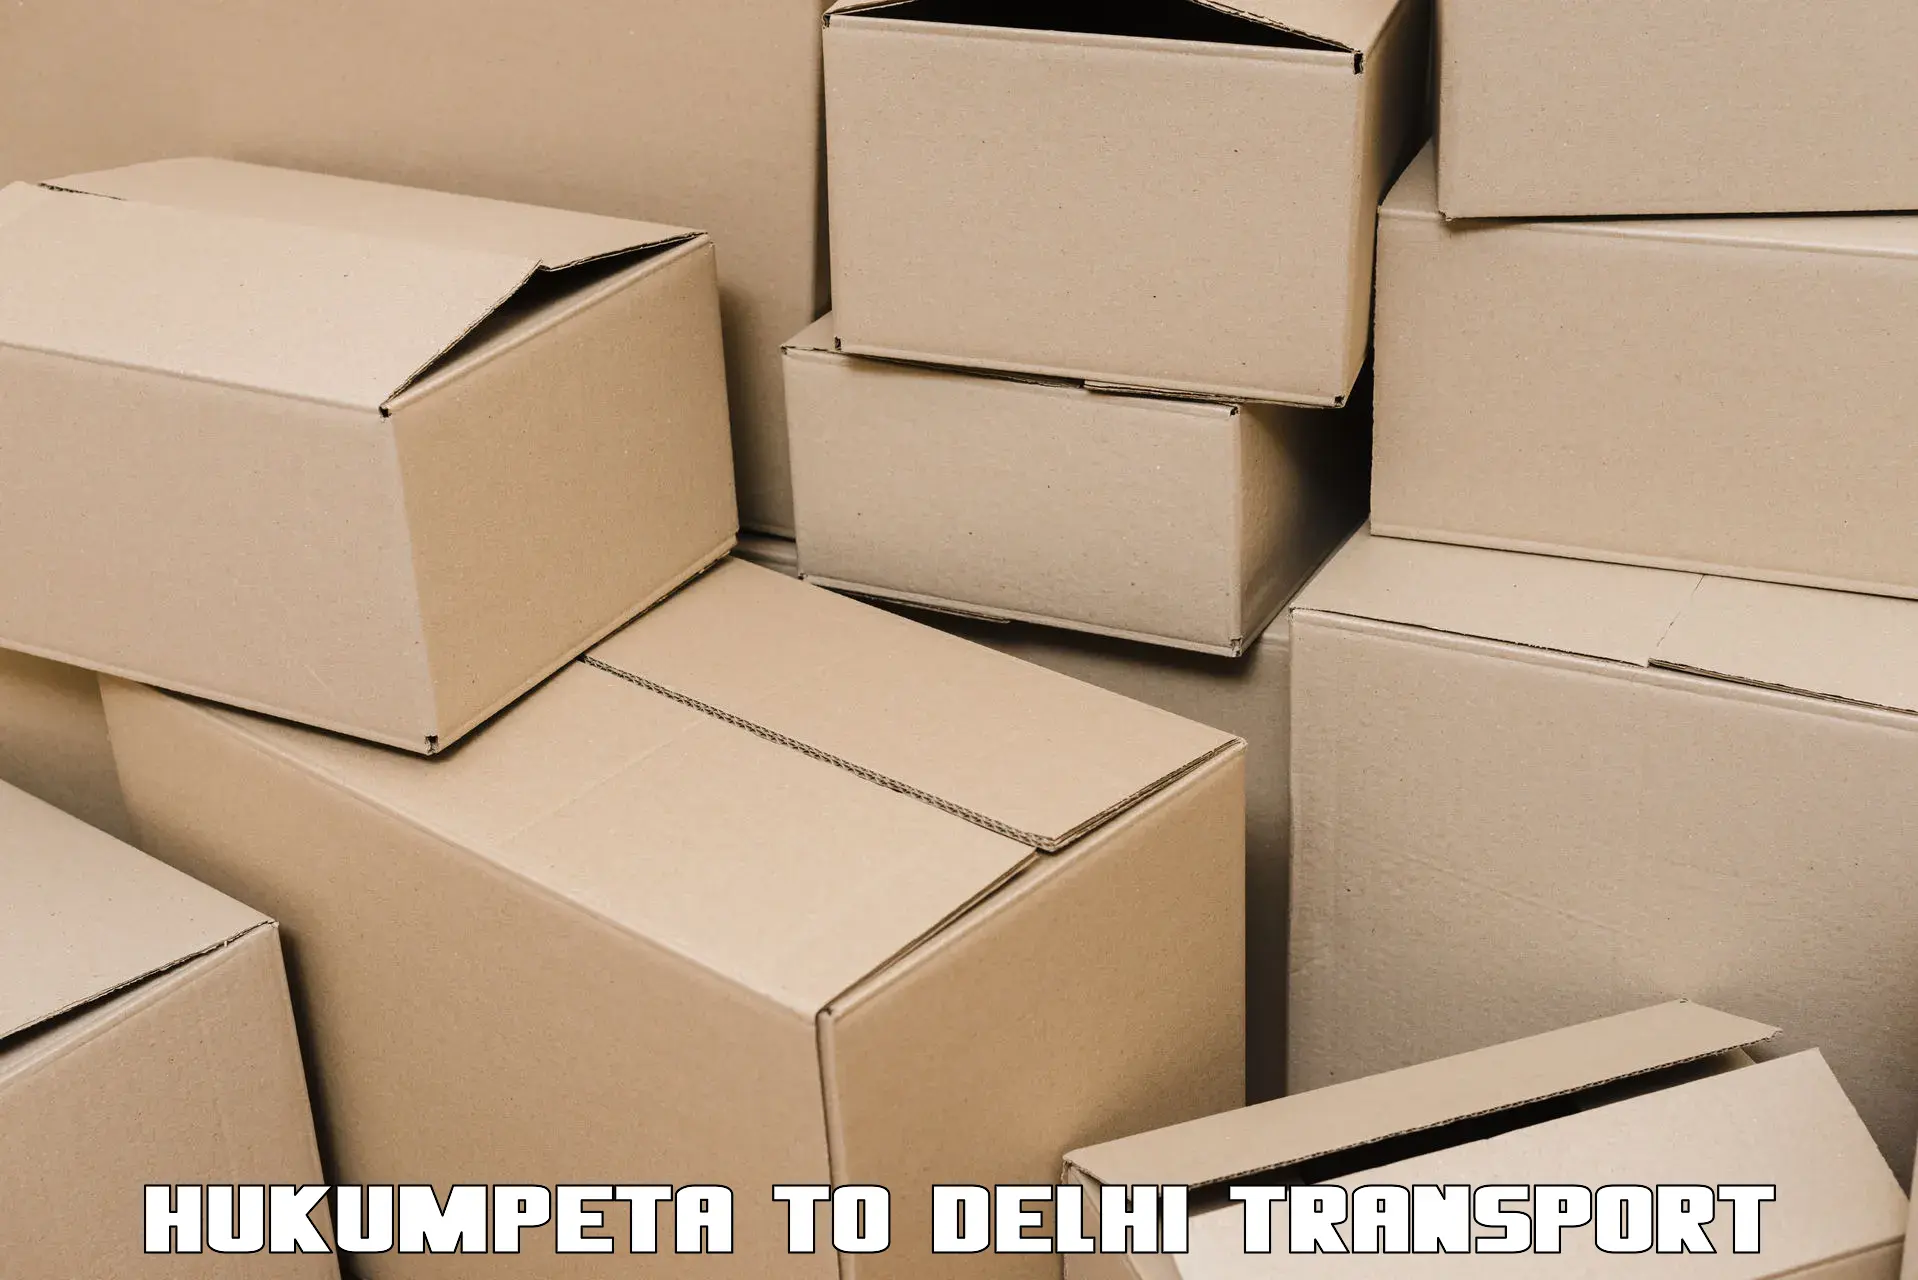 Commercial transport service Hukumpeta to University of Delhi